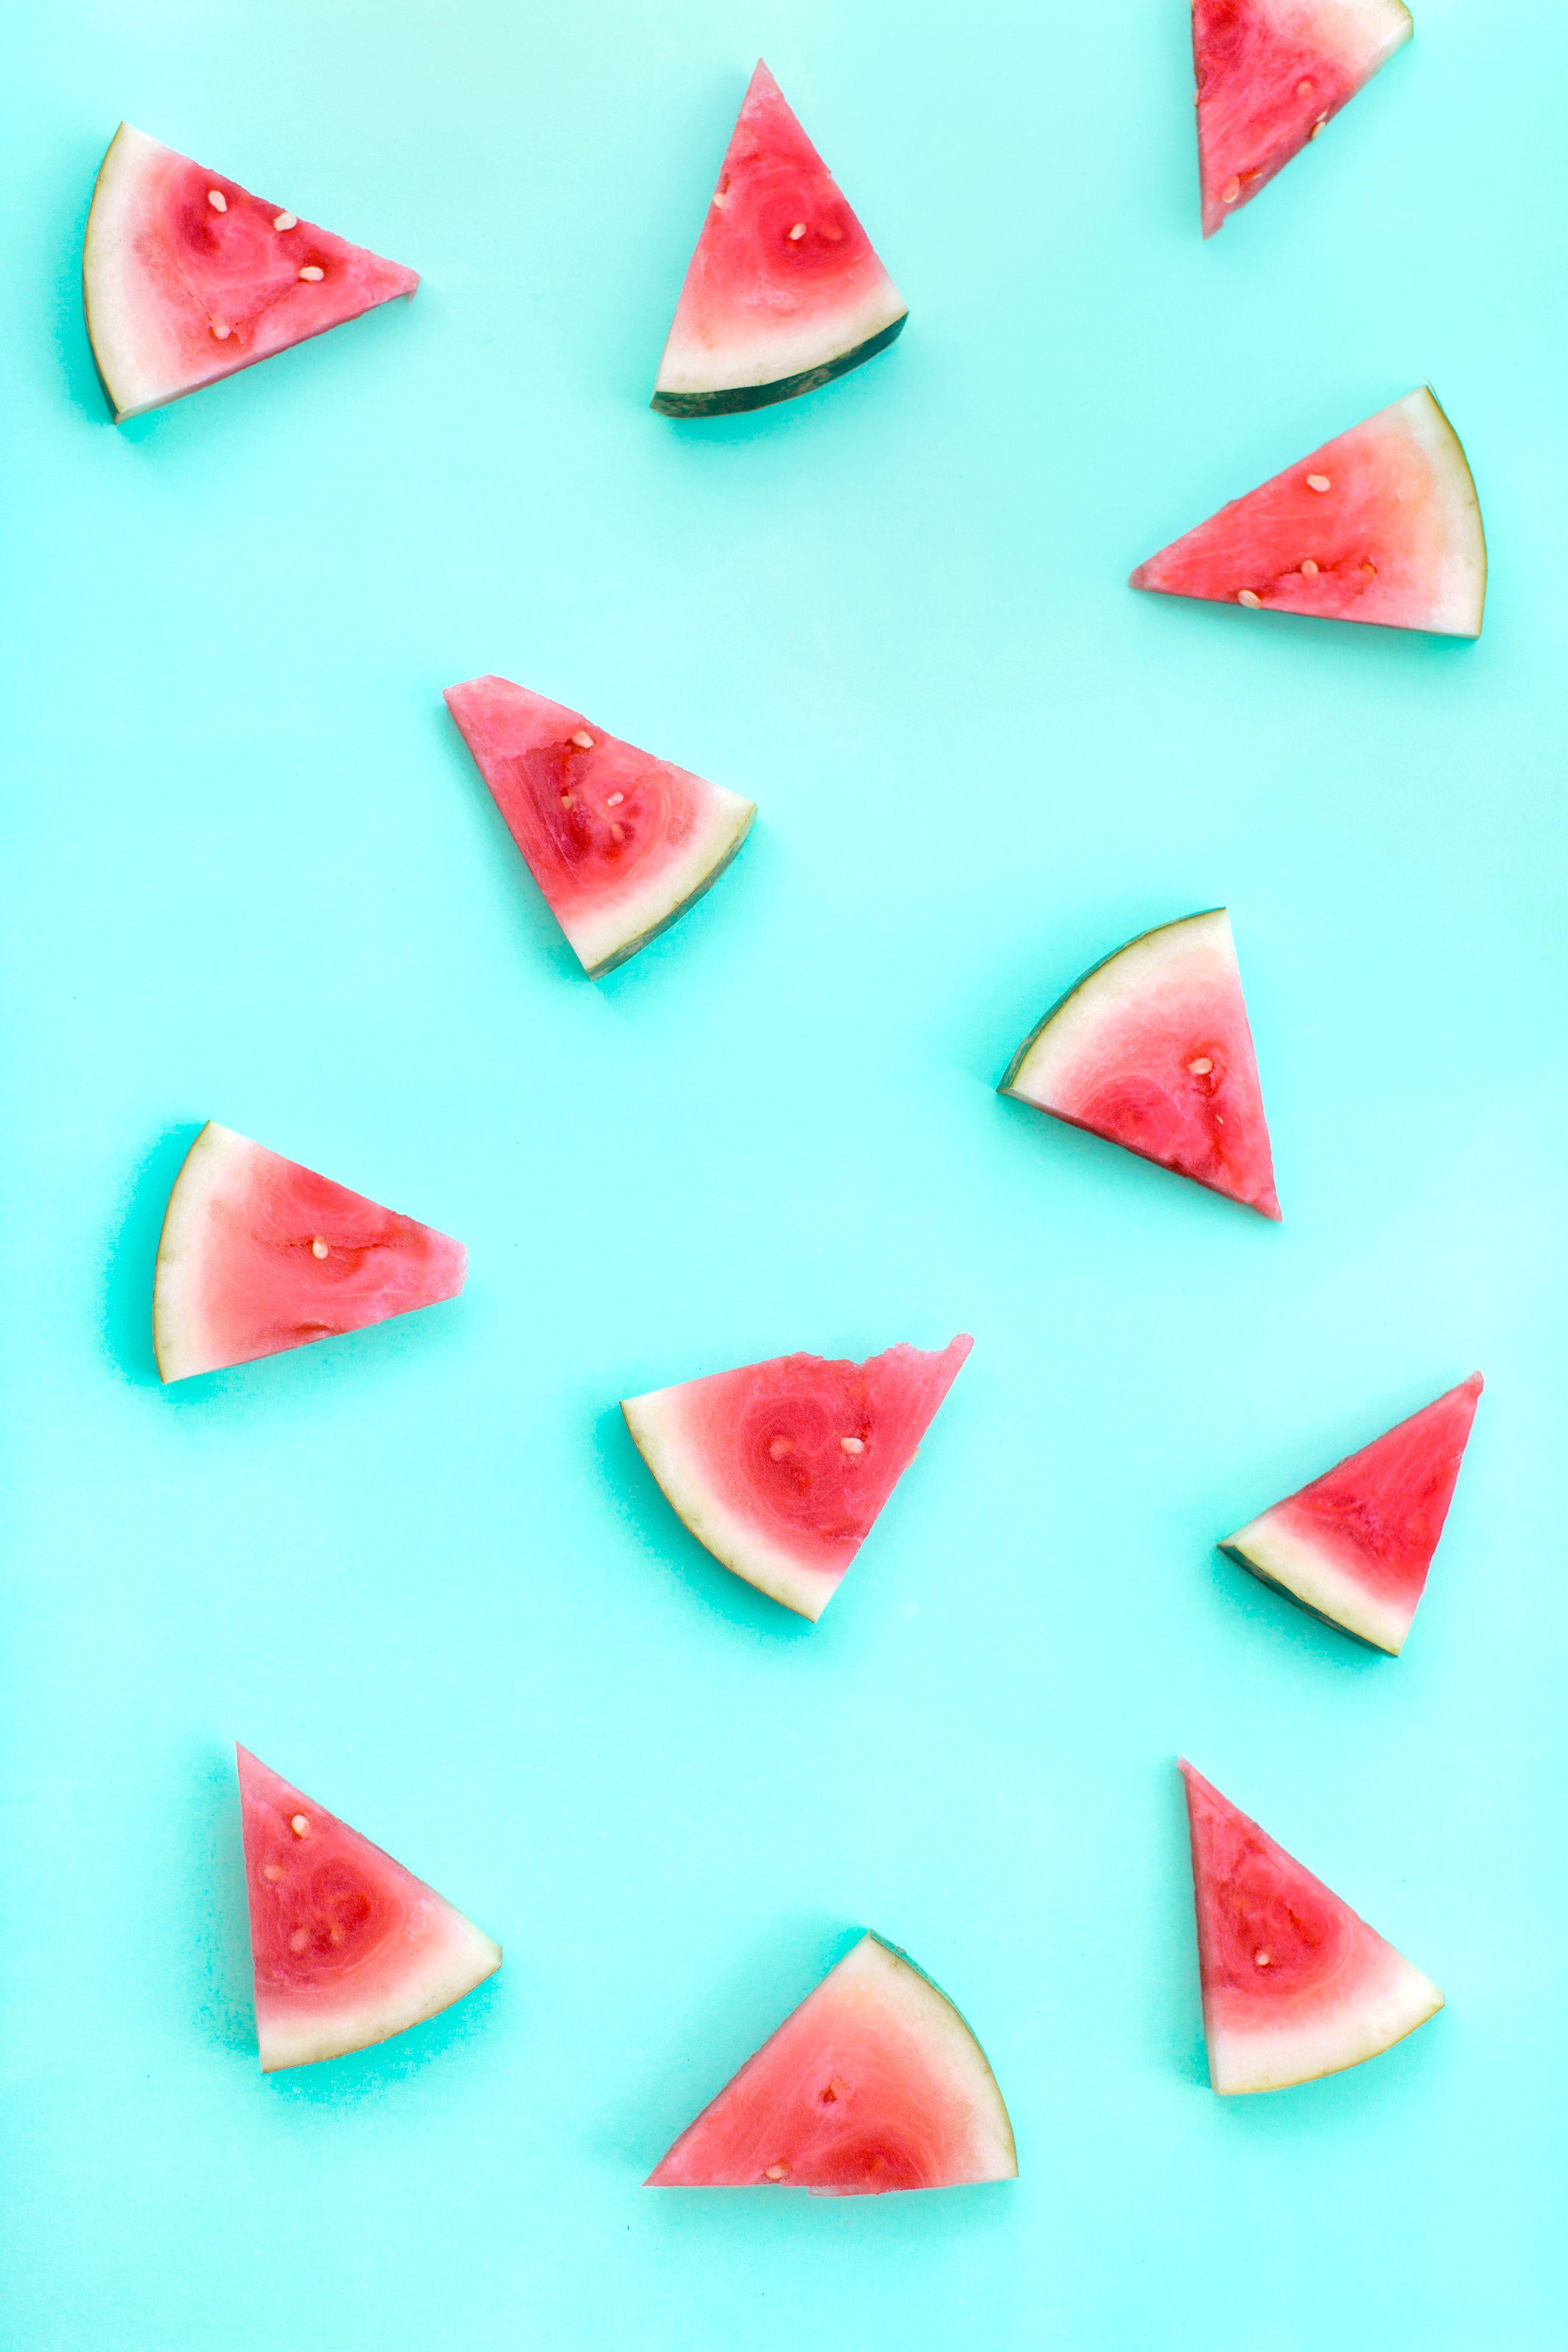 2667 x 4000 · jpeg - Watermelon summer cell phone wallpaper | Wallpaper iphone summer ...